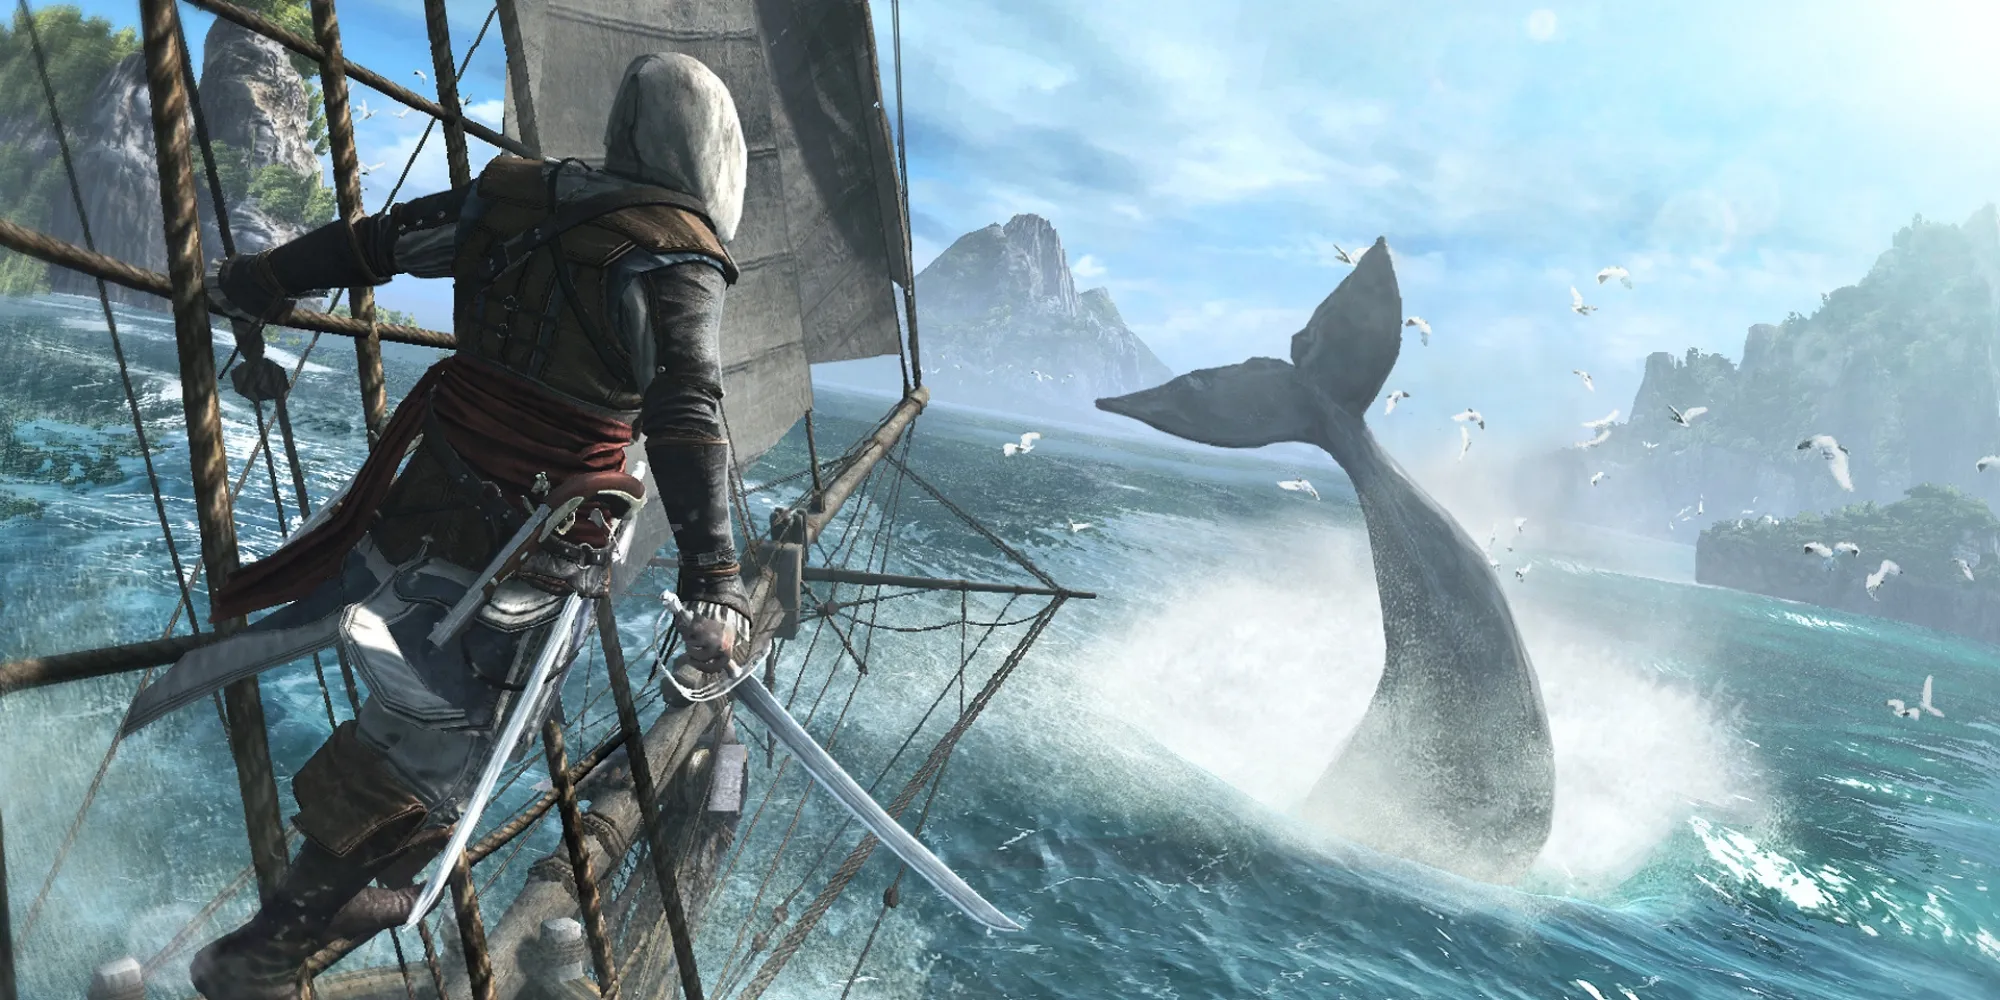 Edward dans Assassin's Creed IV Black Flag